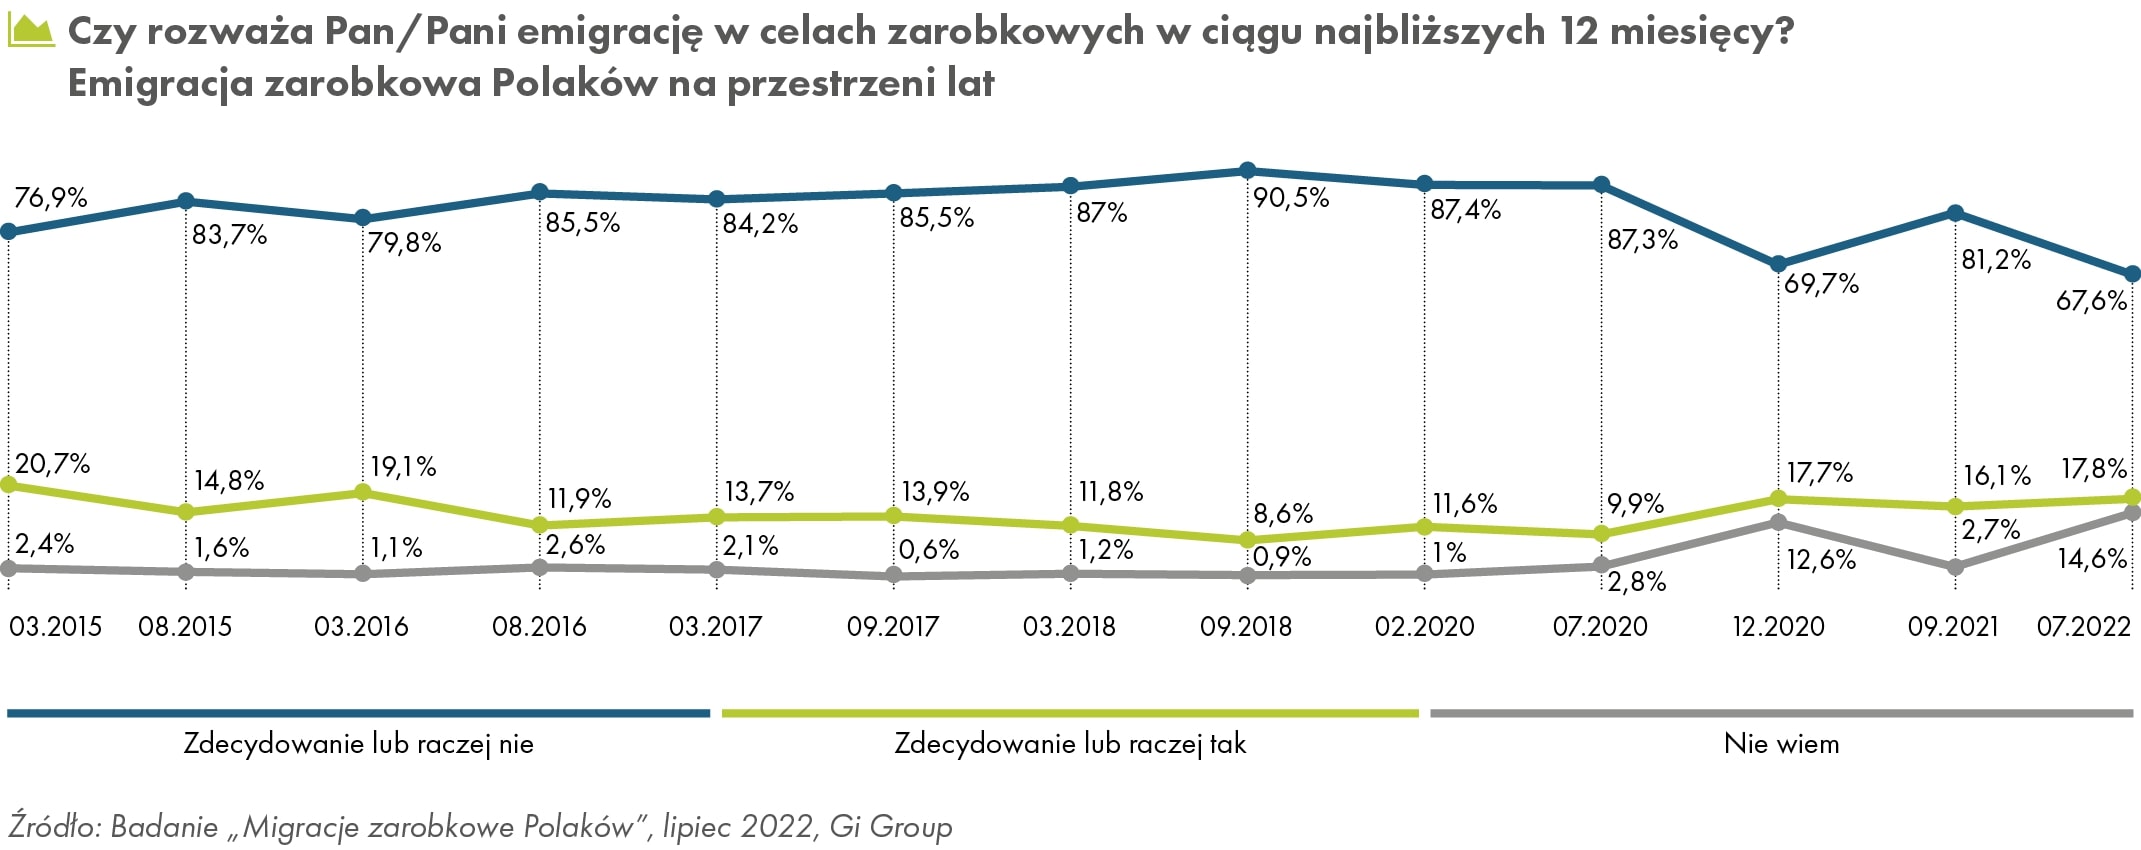 Emigracja zarobkowa Polaków na przestrzeni lat (źródło: GI Group)